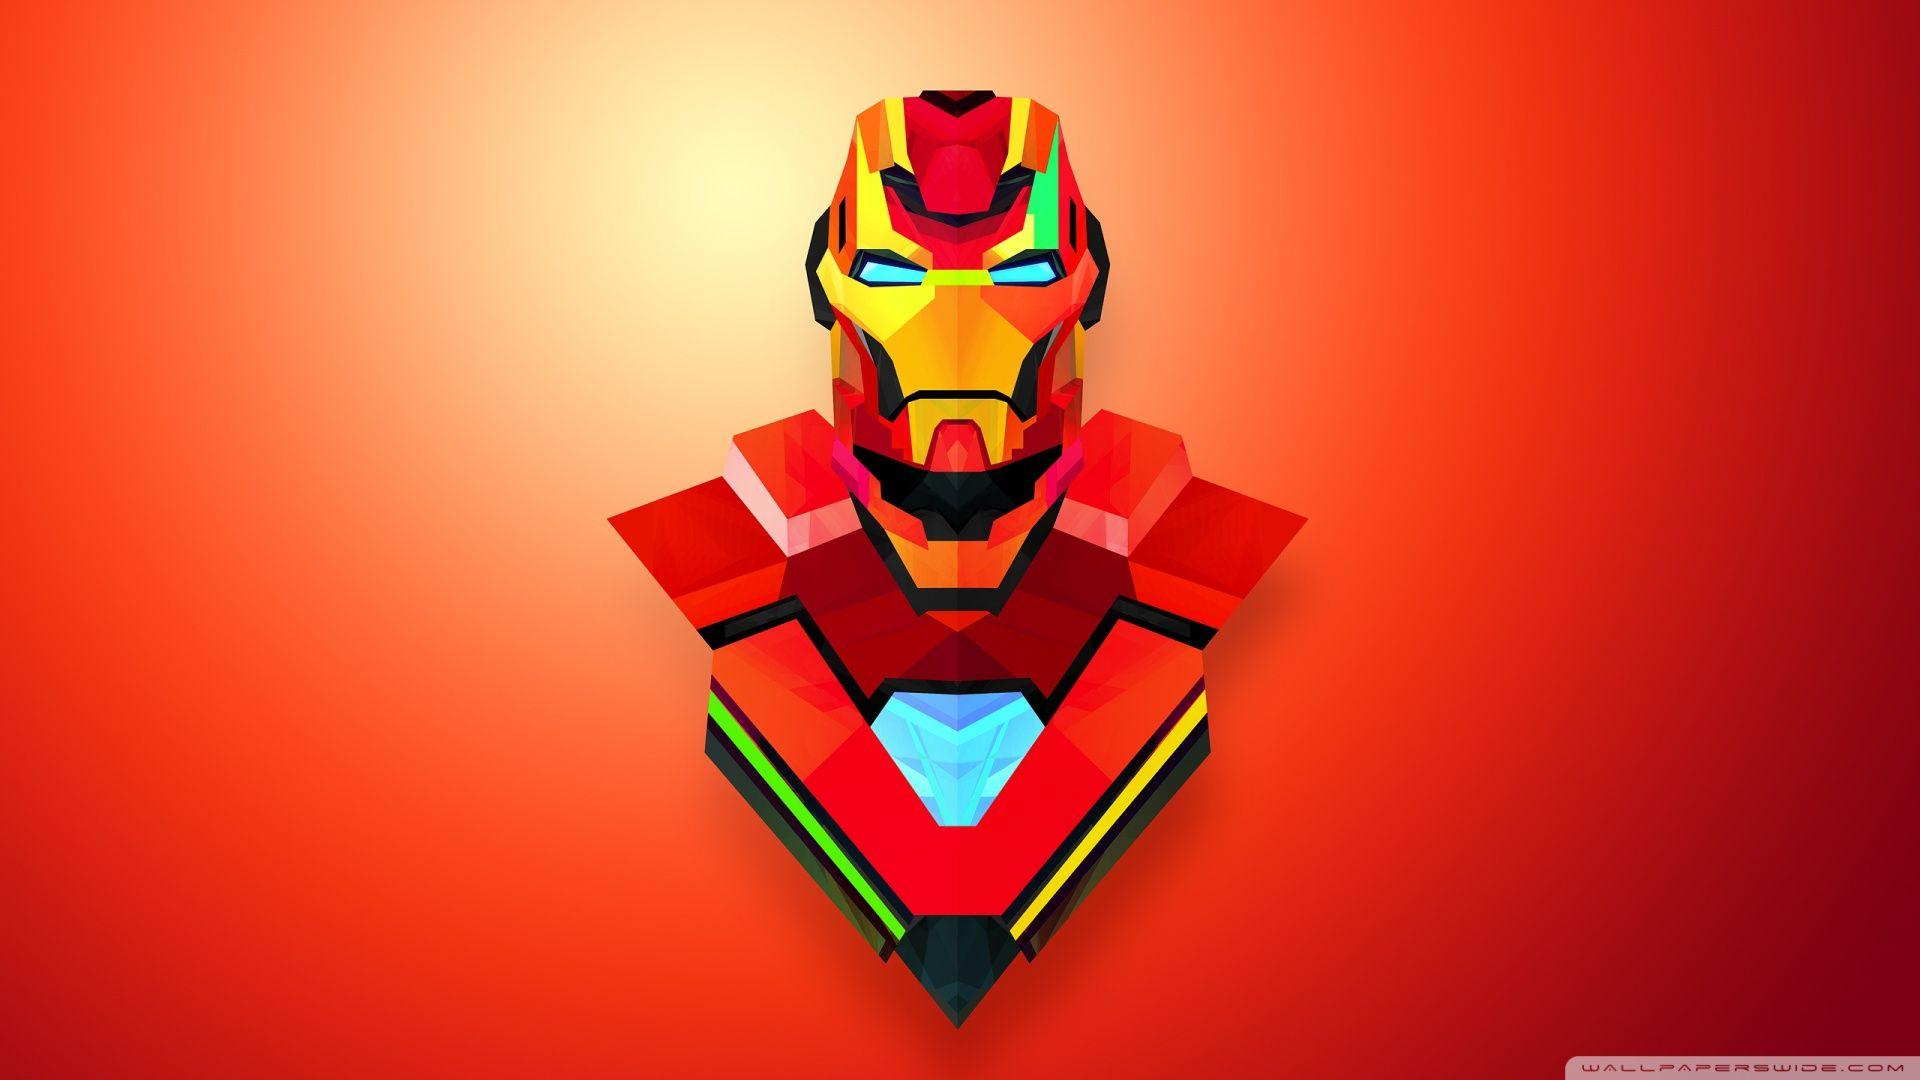 Iron Man Abstract Art ❤ 4K HD Desktop Wallpaper for • Wide & Ultra